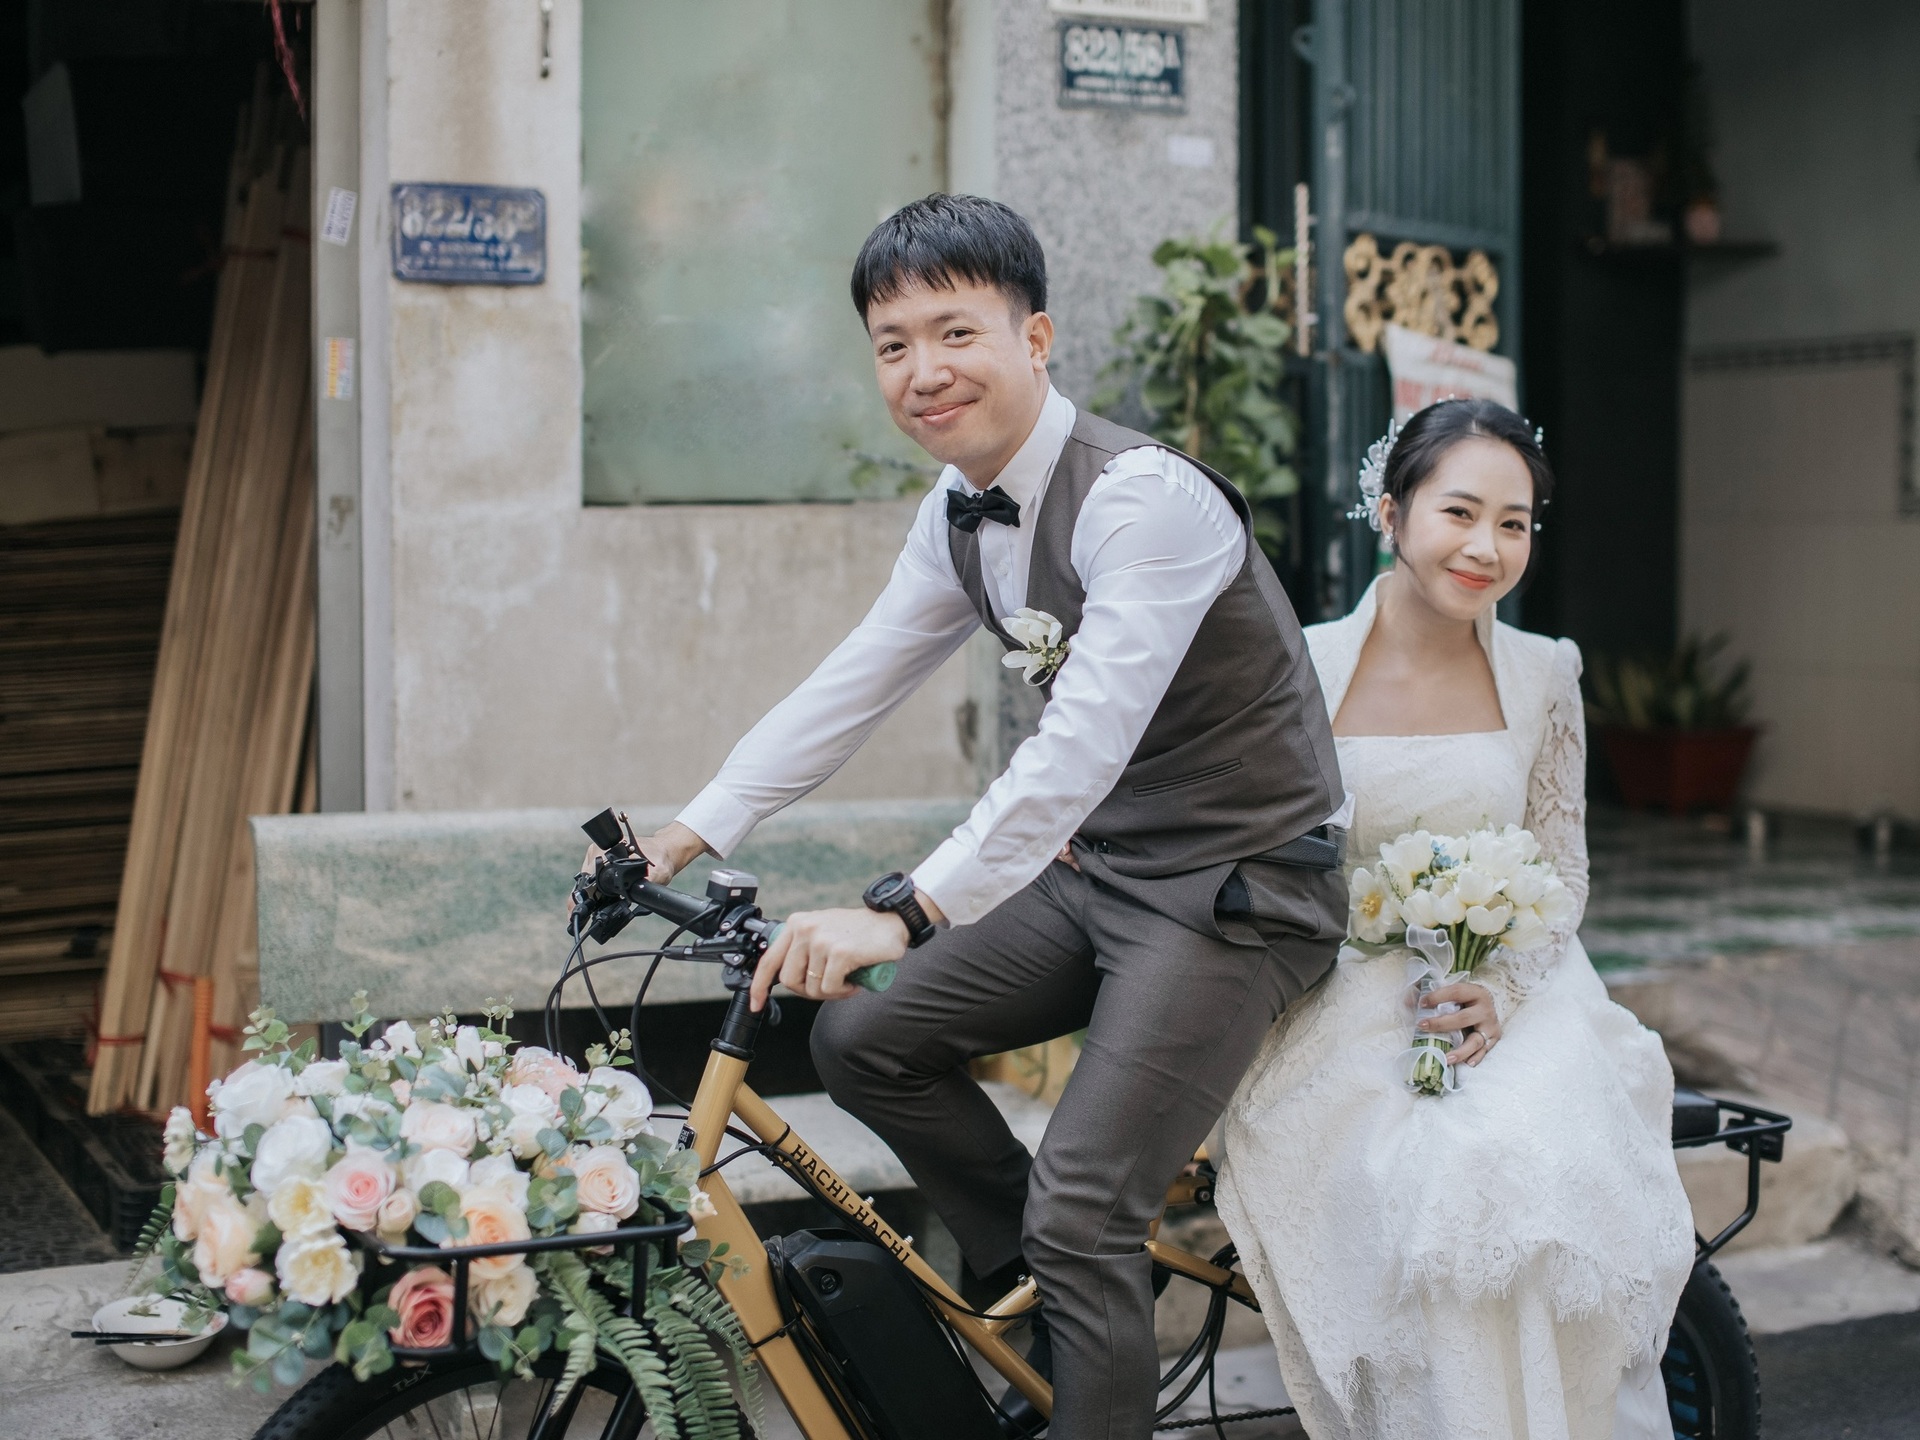 Nghiền đạp xe, chàng trai TPHCM cưới được vợ xinh đẹp, rước dâu bằng xe đạp - 10